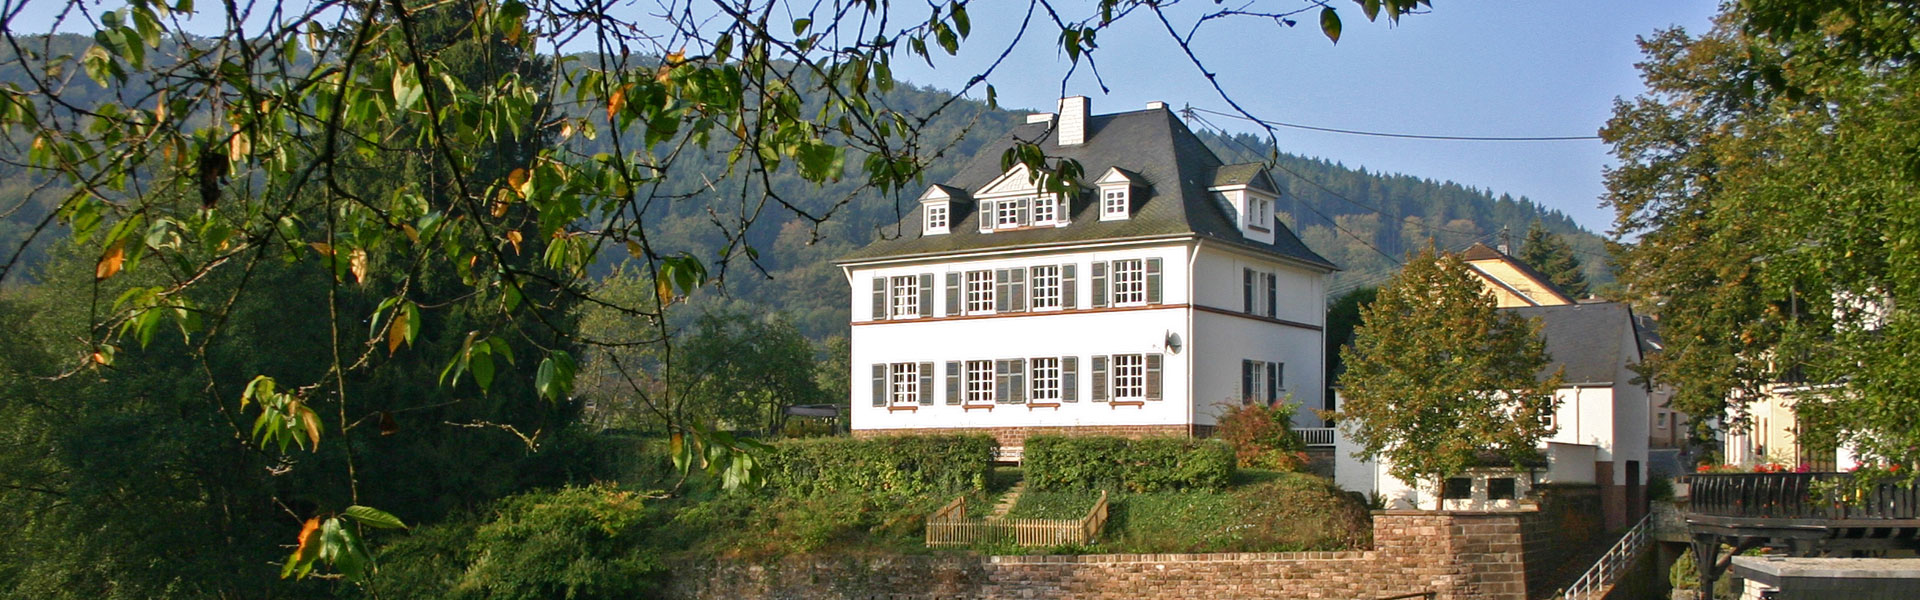 Villa in der Eifel ansehen